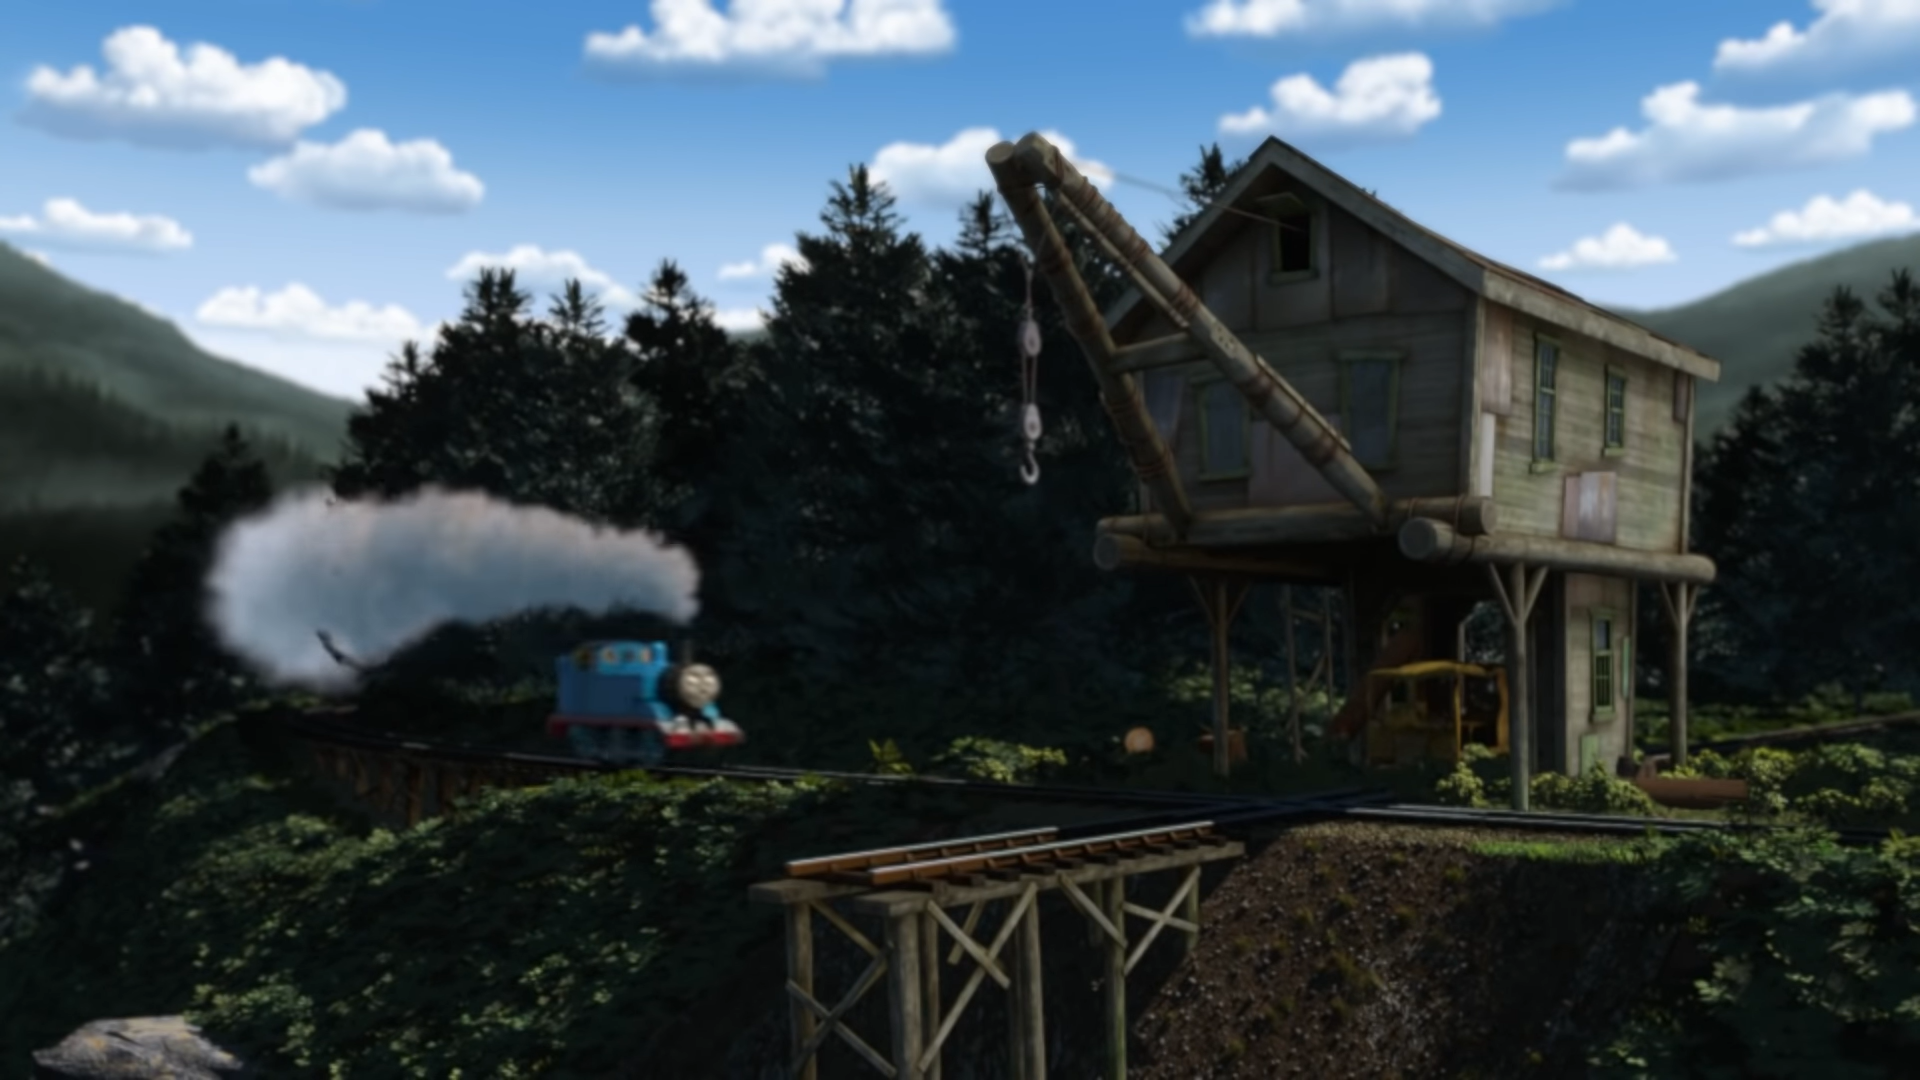 Thomas trainz misty island